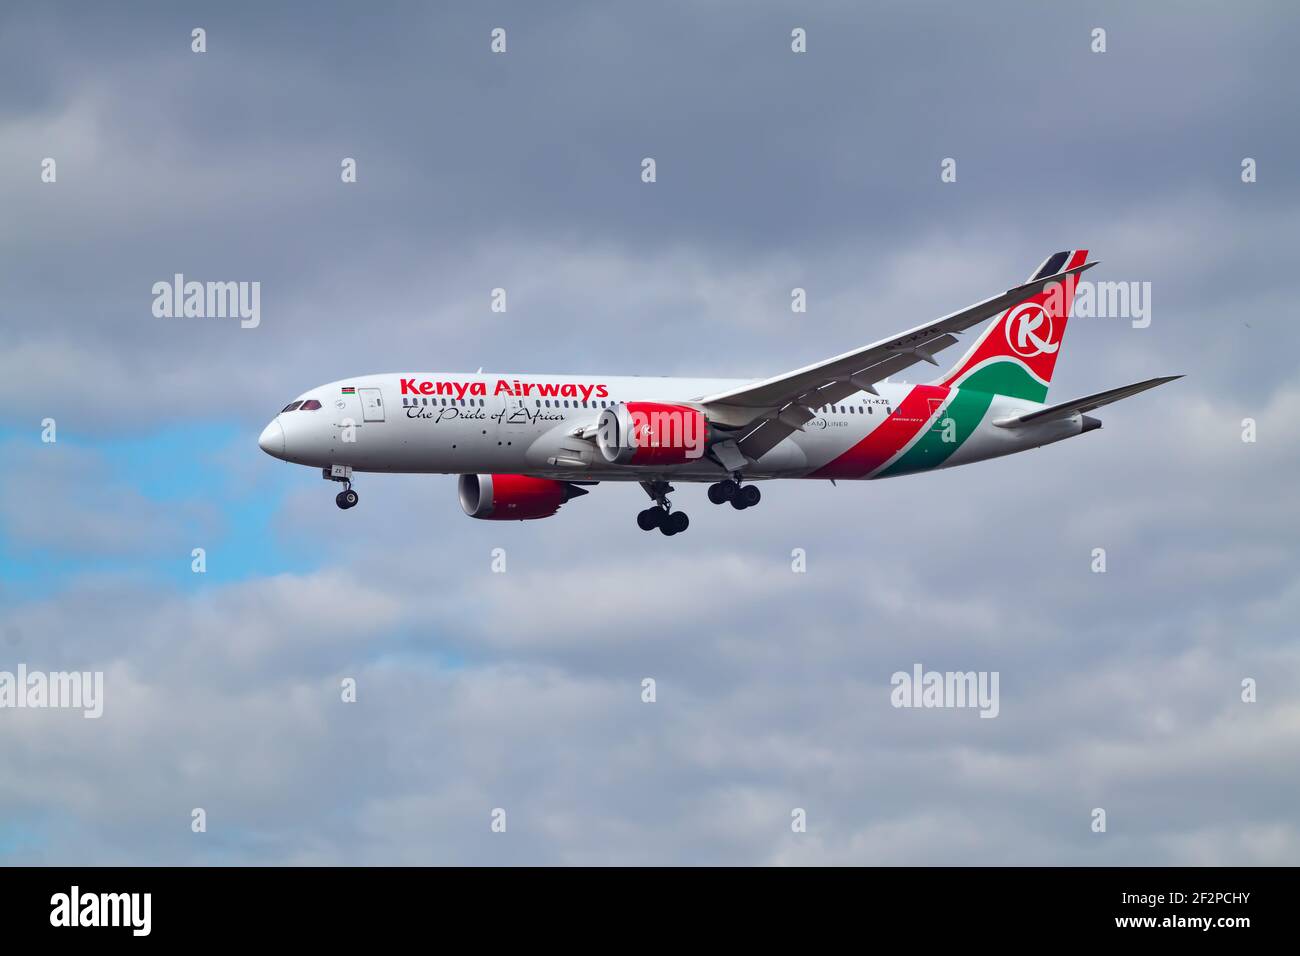 Großbritannien, London Heathrow, März 2020 - Kenya Airways letzter Flug nach Heathrow während der Sperrung. Hoher Kontrast und helles Bild der Ebene Richtung links. Raum Stockfoto